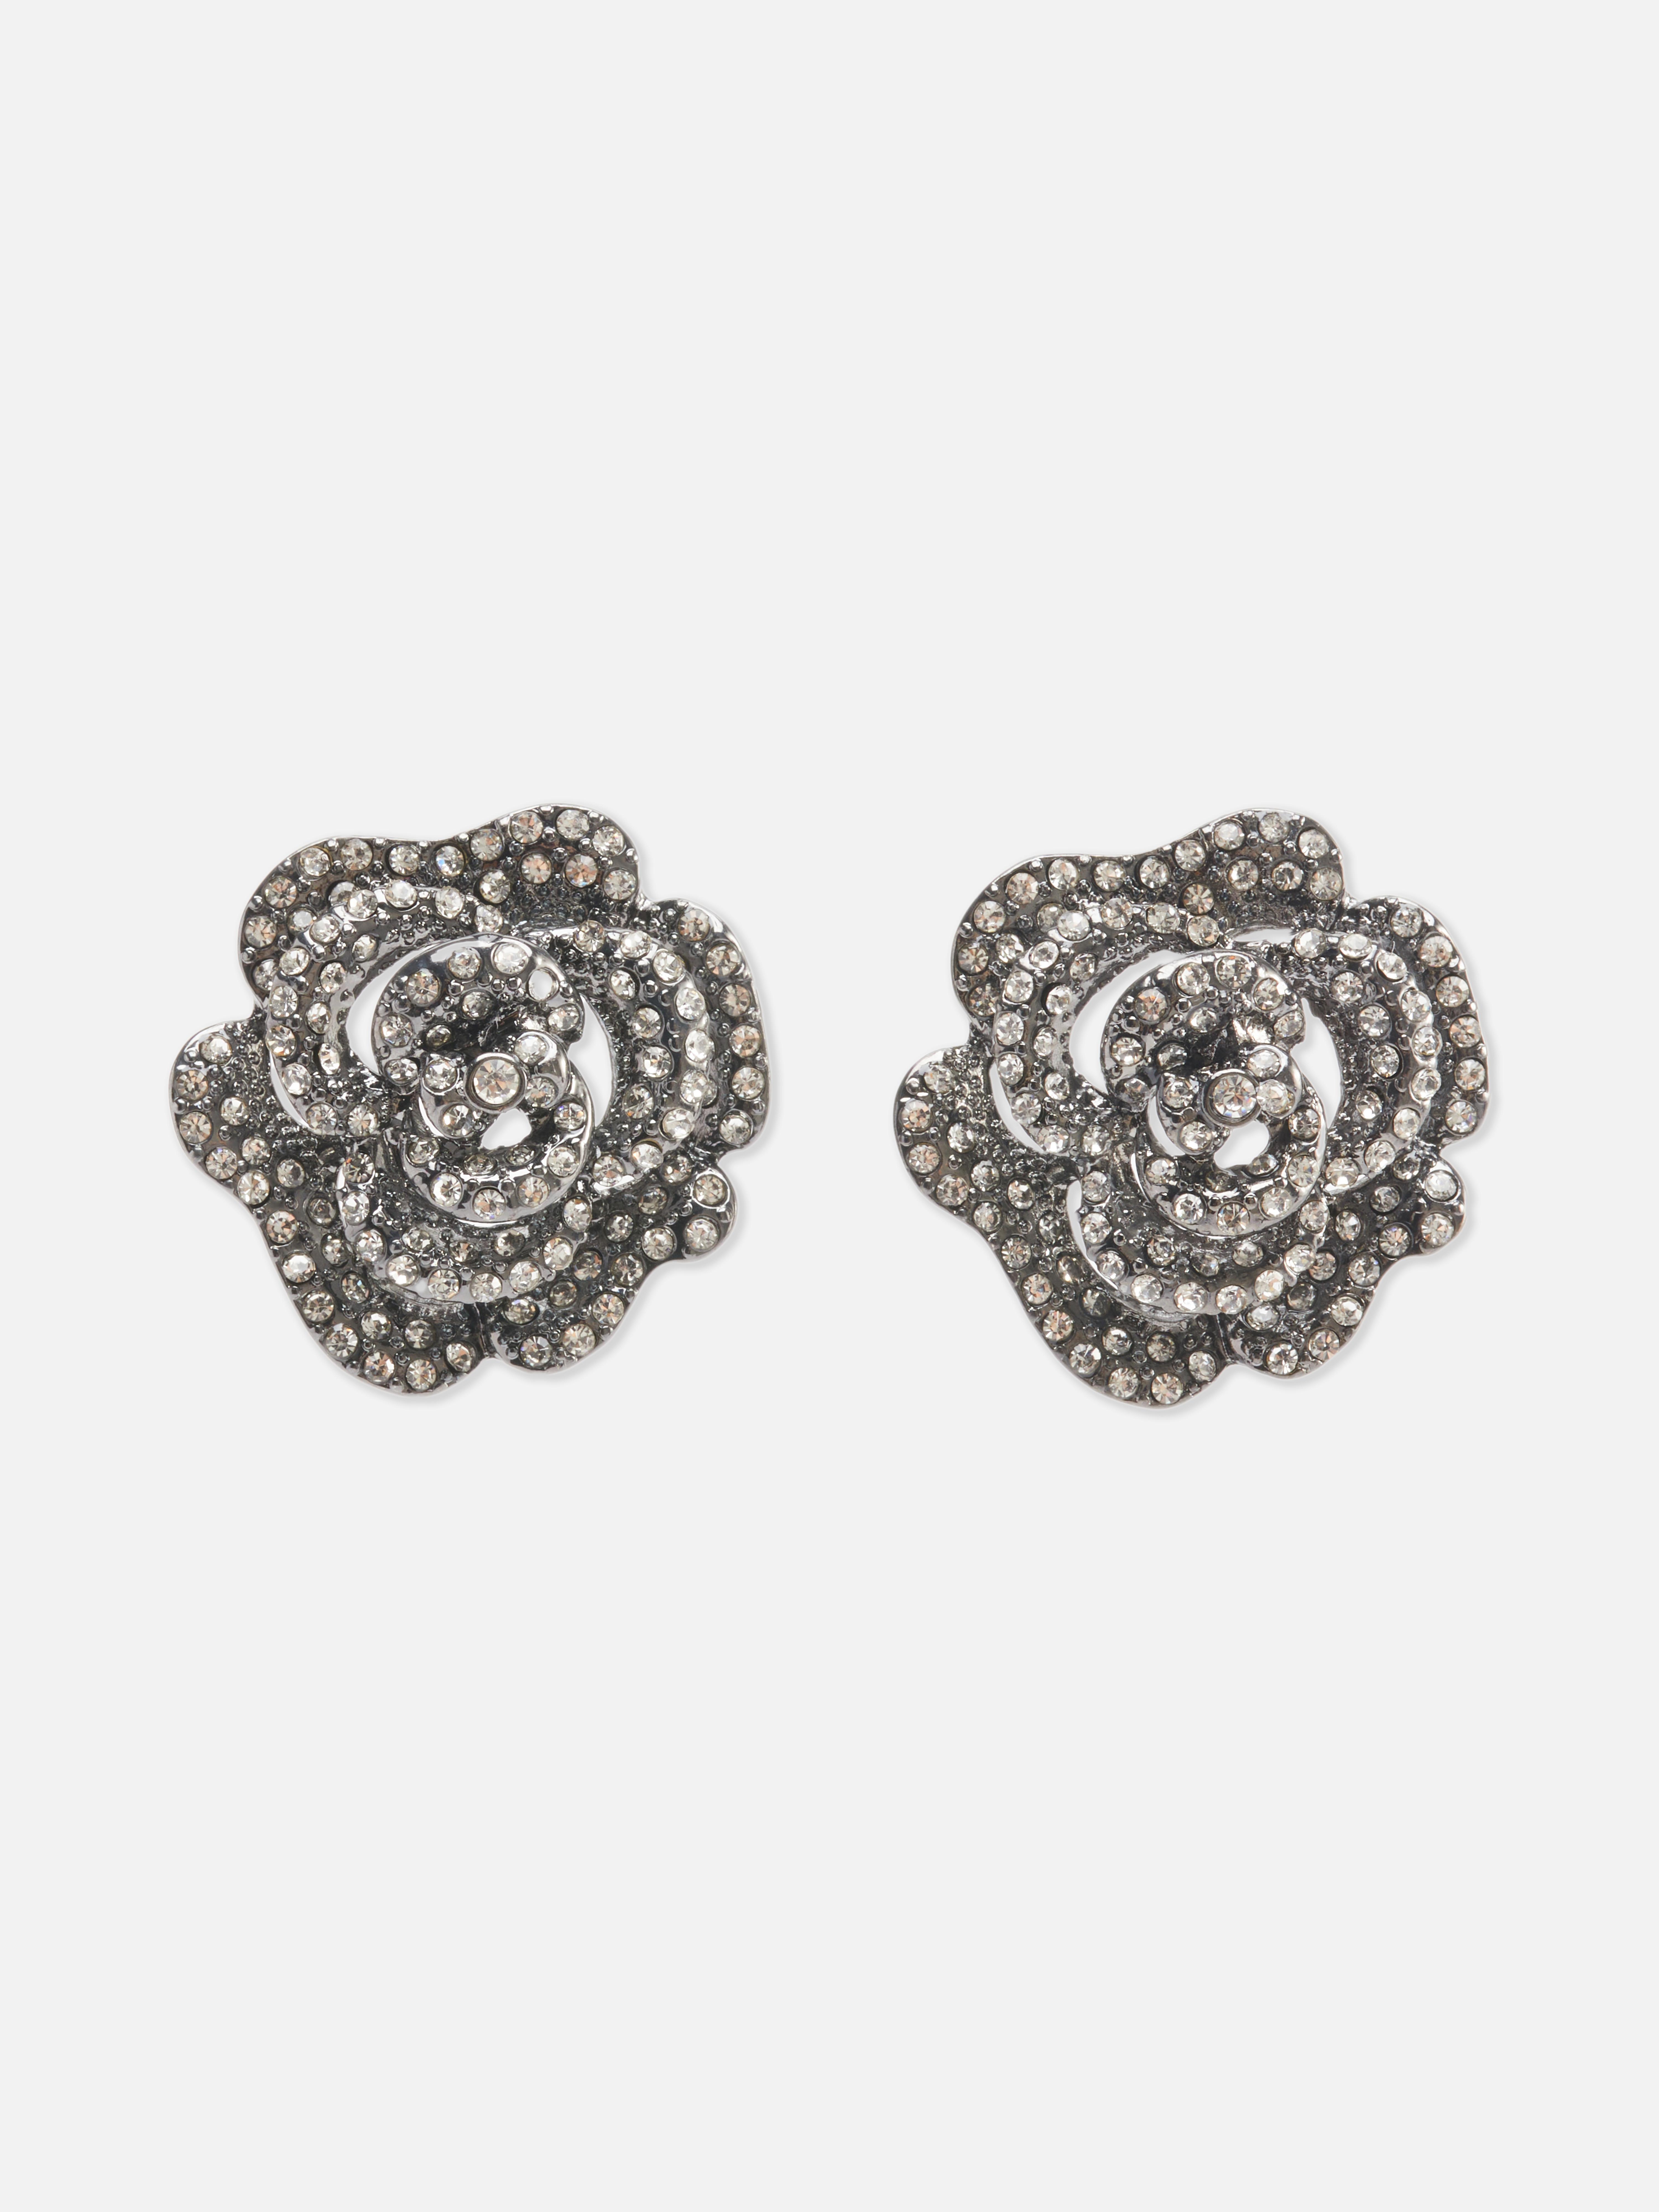 Rita Ora Diamanté Rose Earrings